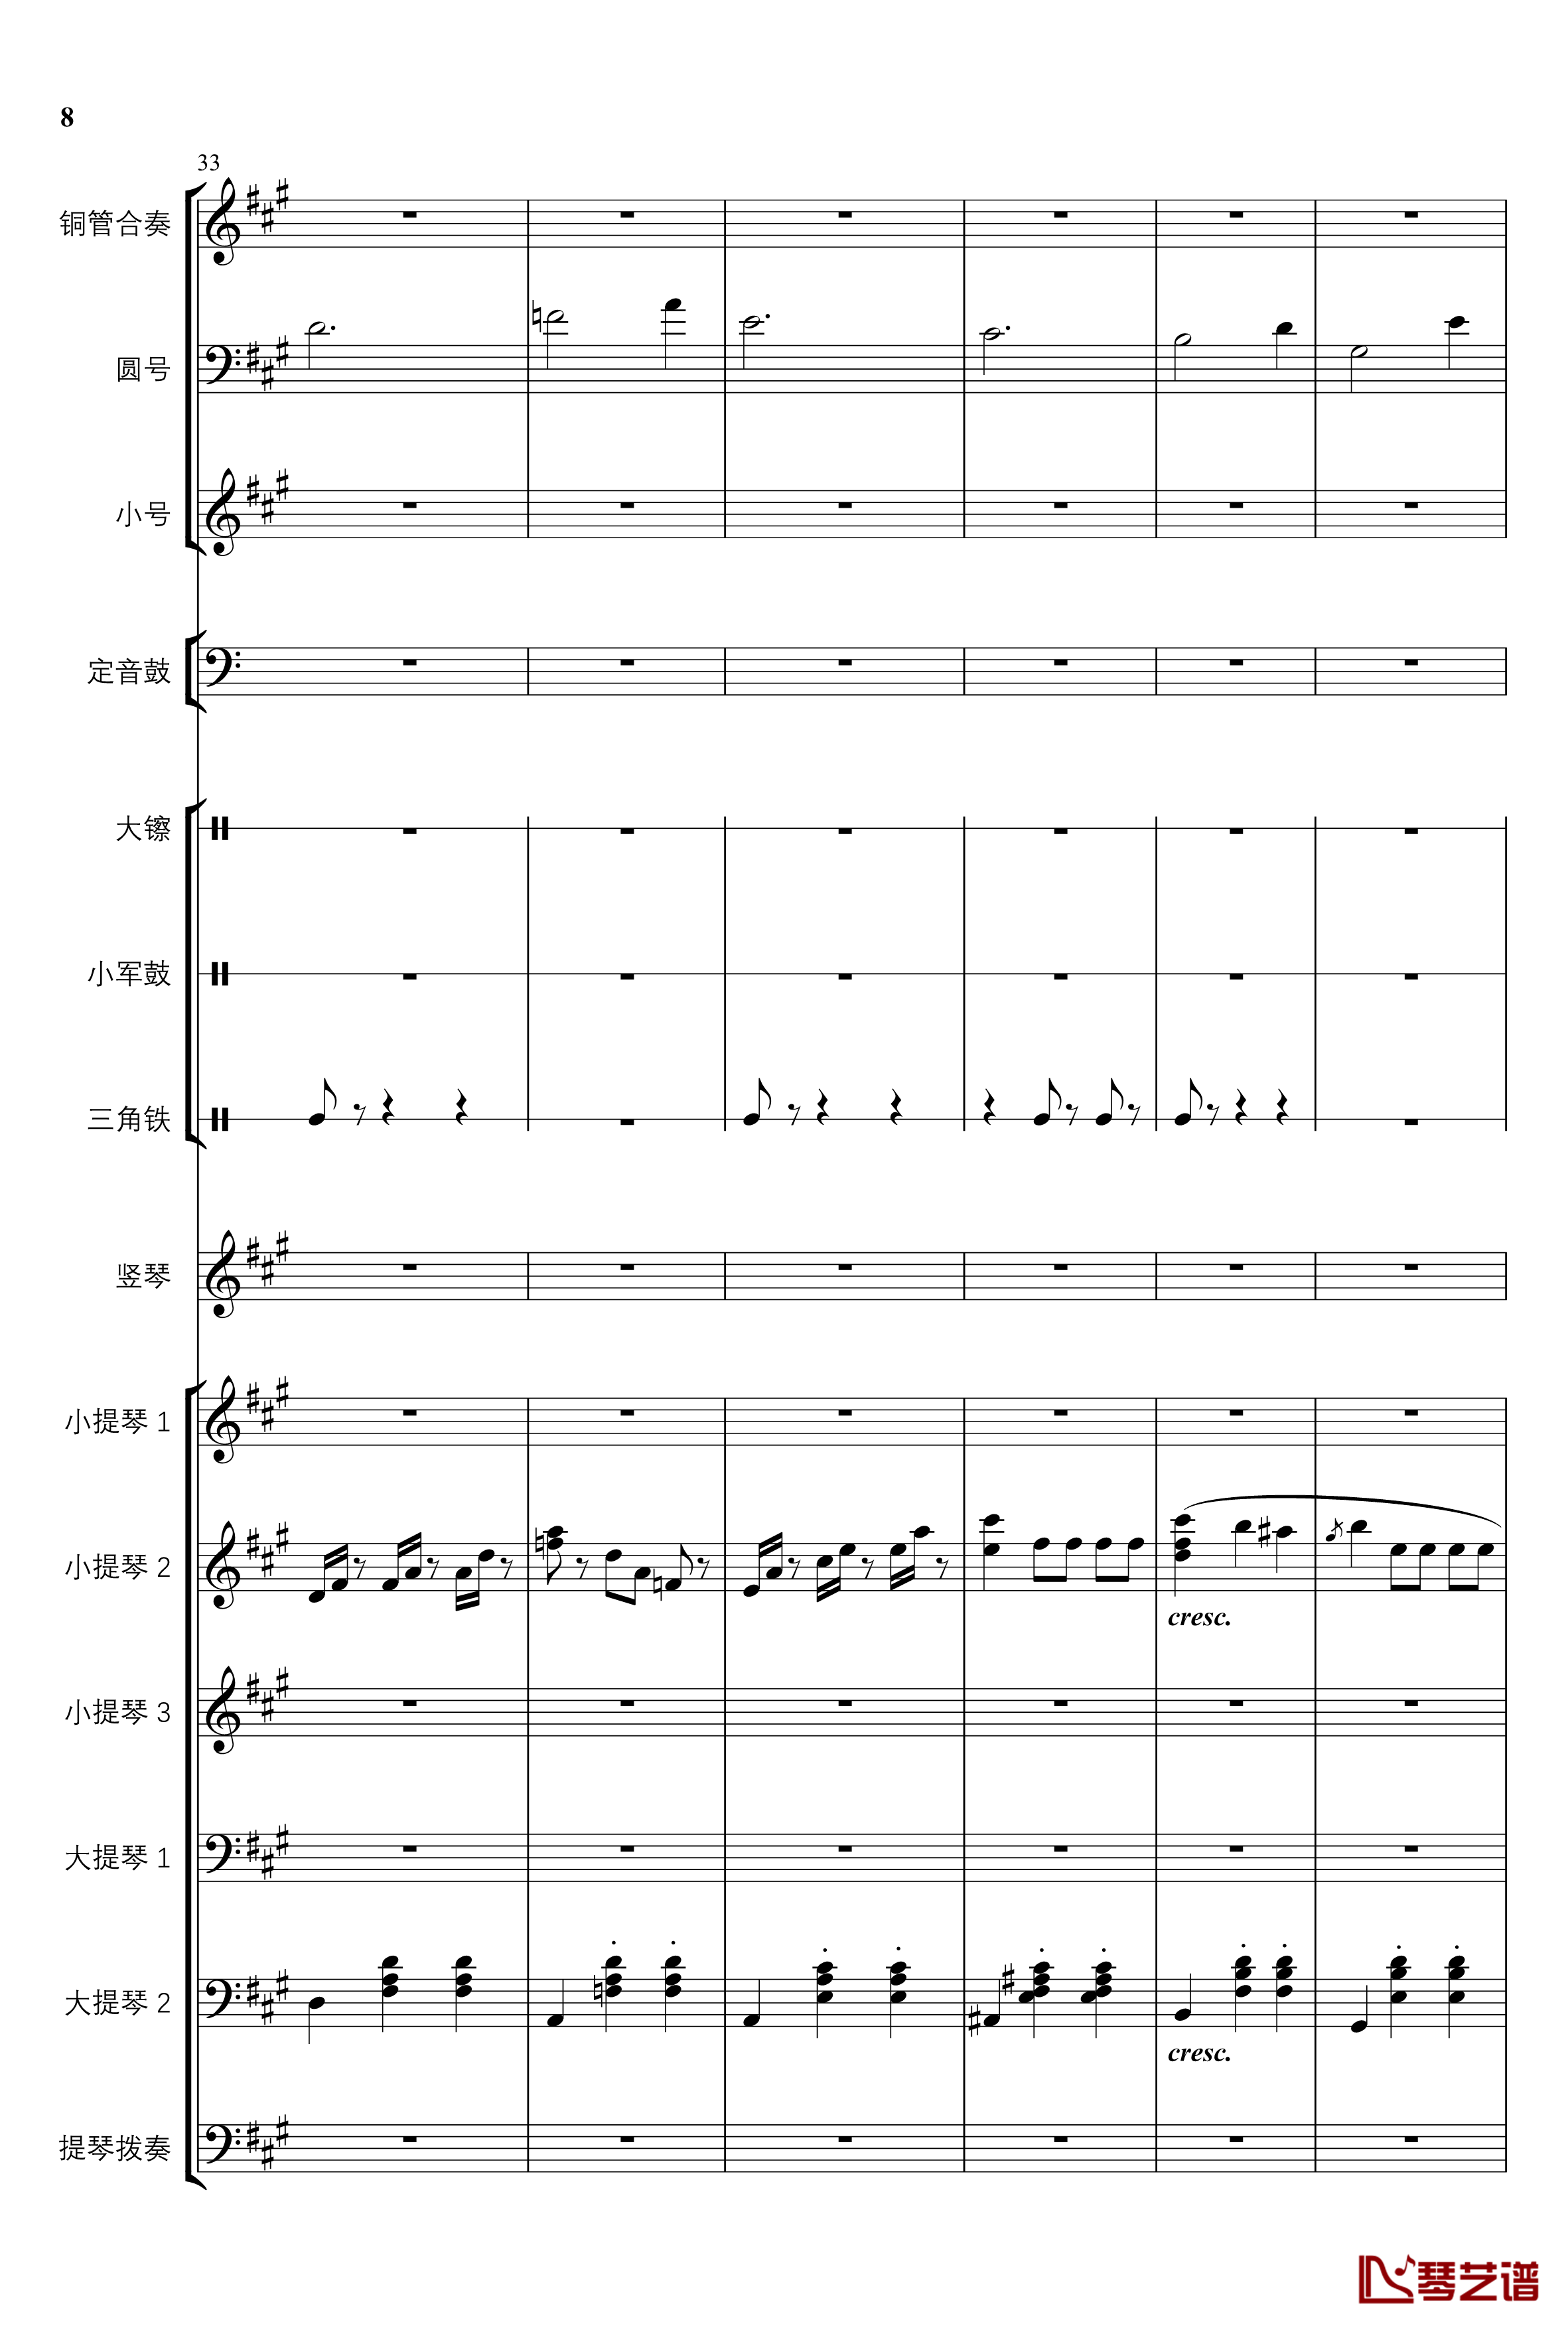 2013考试周的叙事曲钢琴谱-管弦乐重编曲版-江畔新绿8